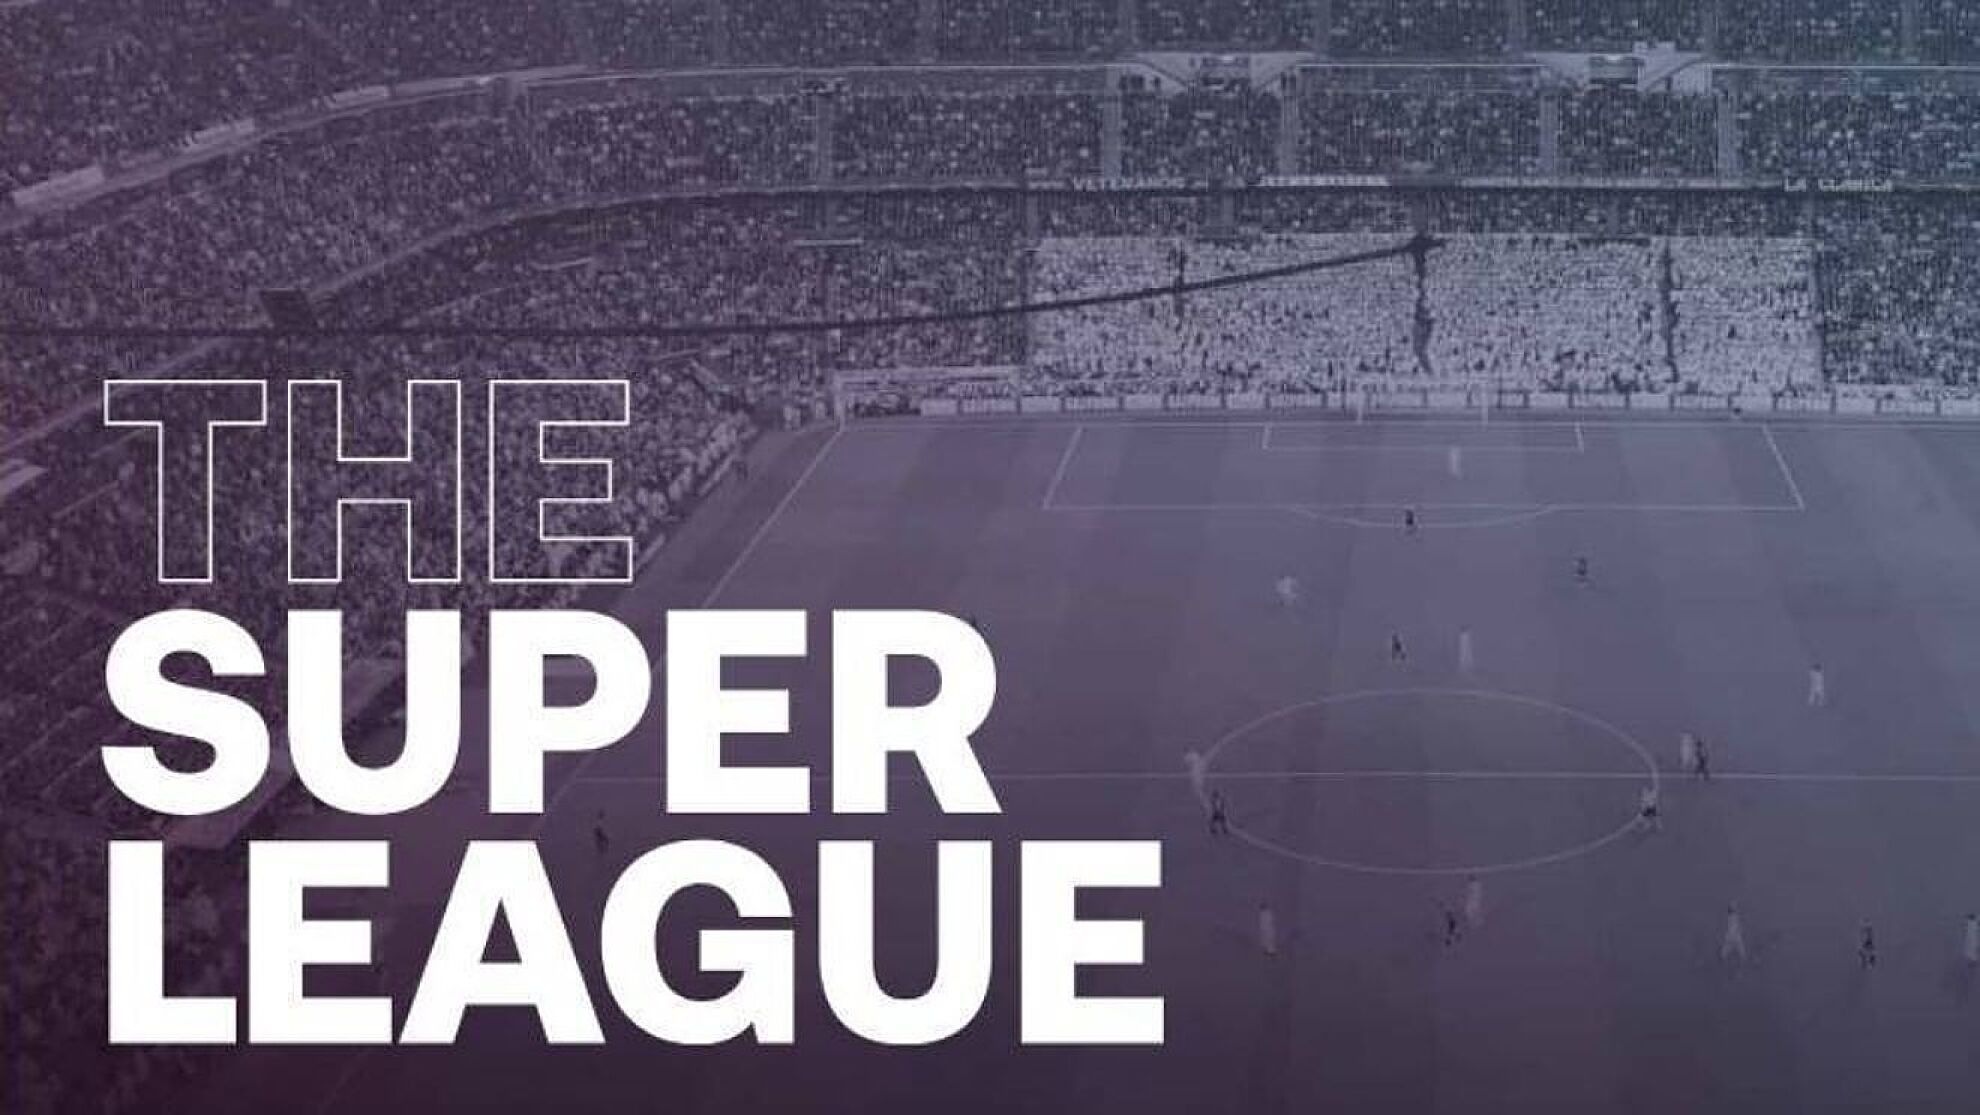 European Super League Kembali dengan Format Baru, CEO A22 Ingin Libatkan Andrea Agnelli